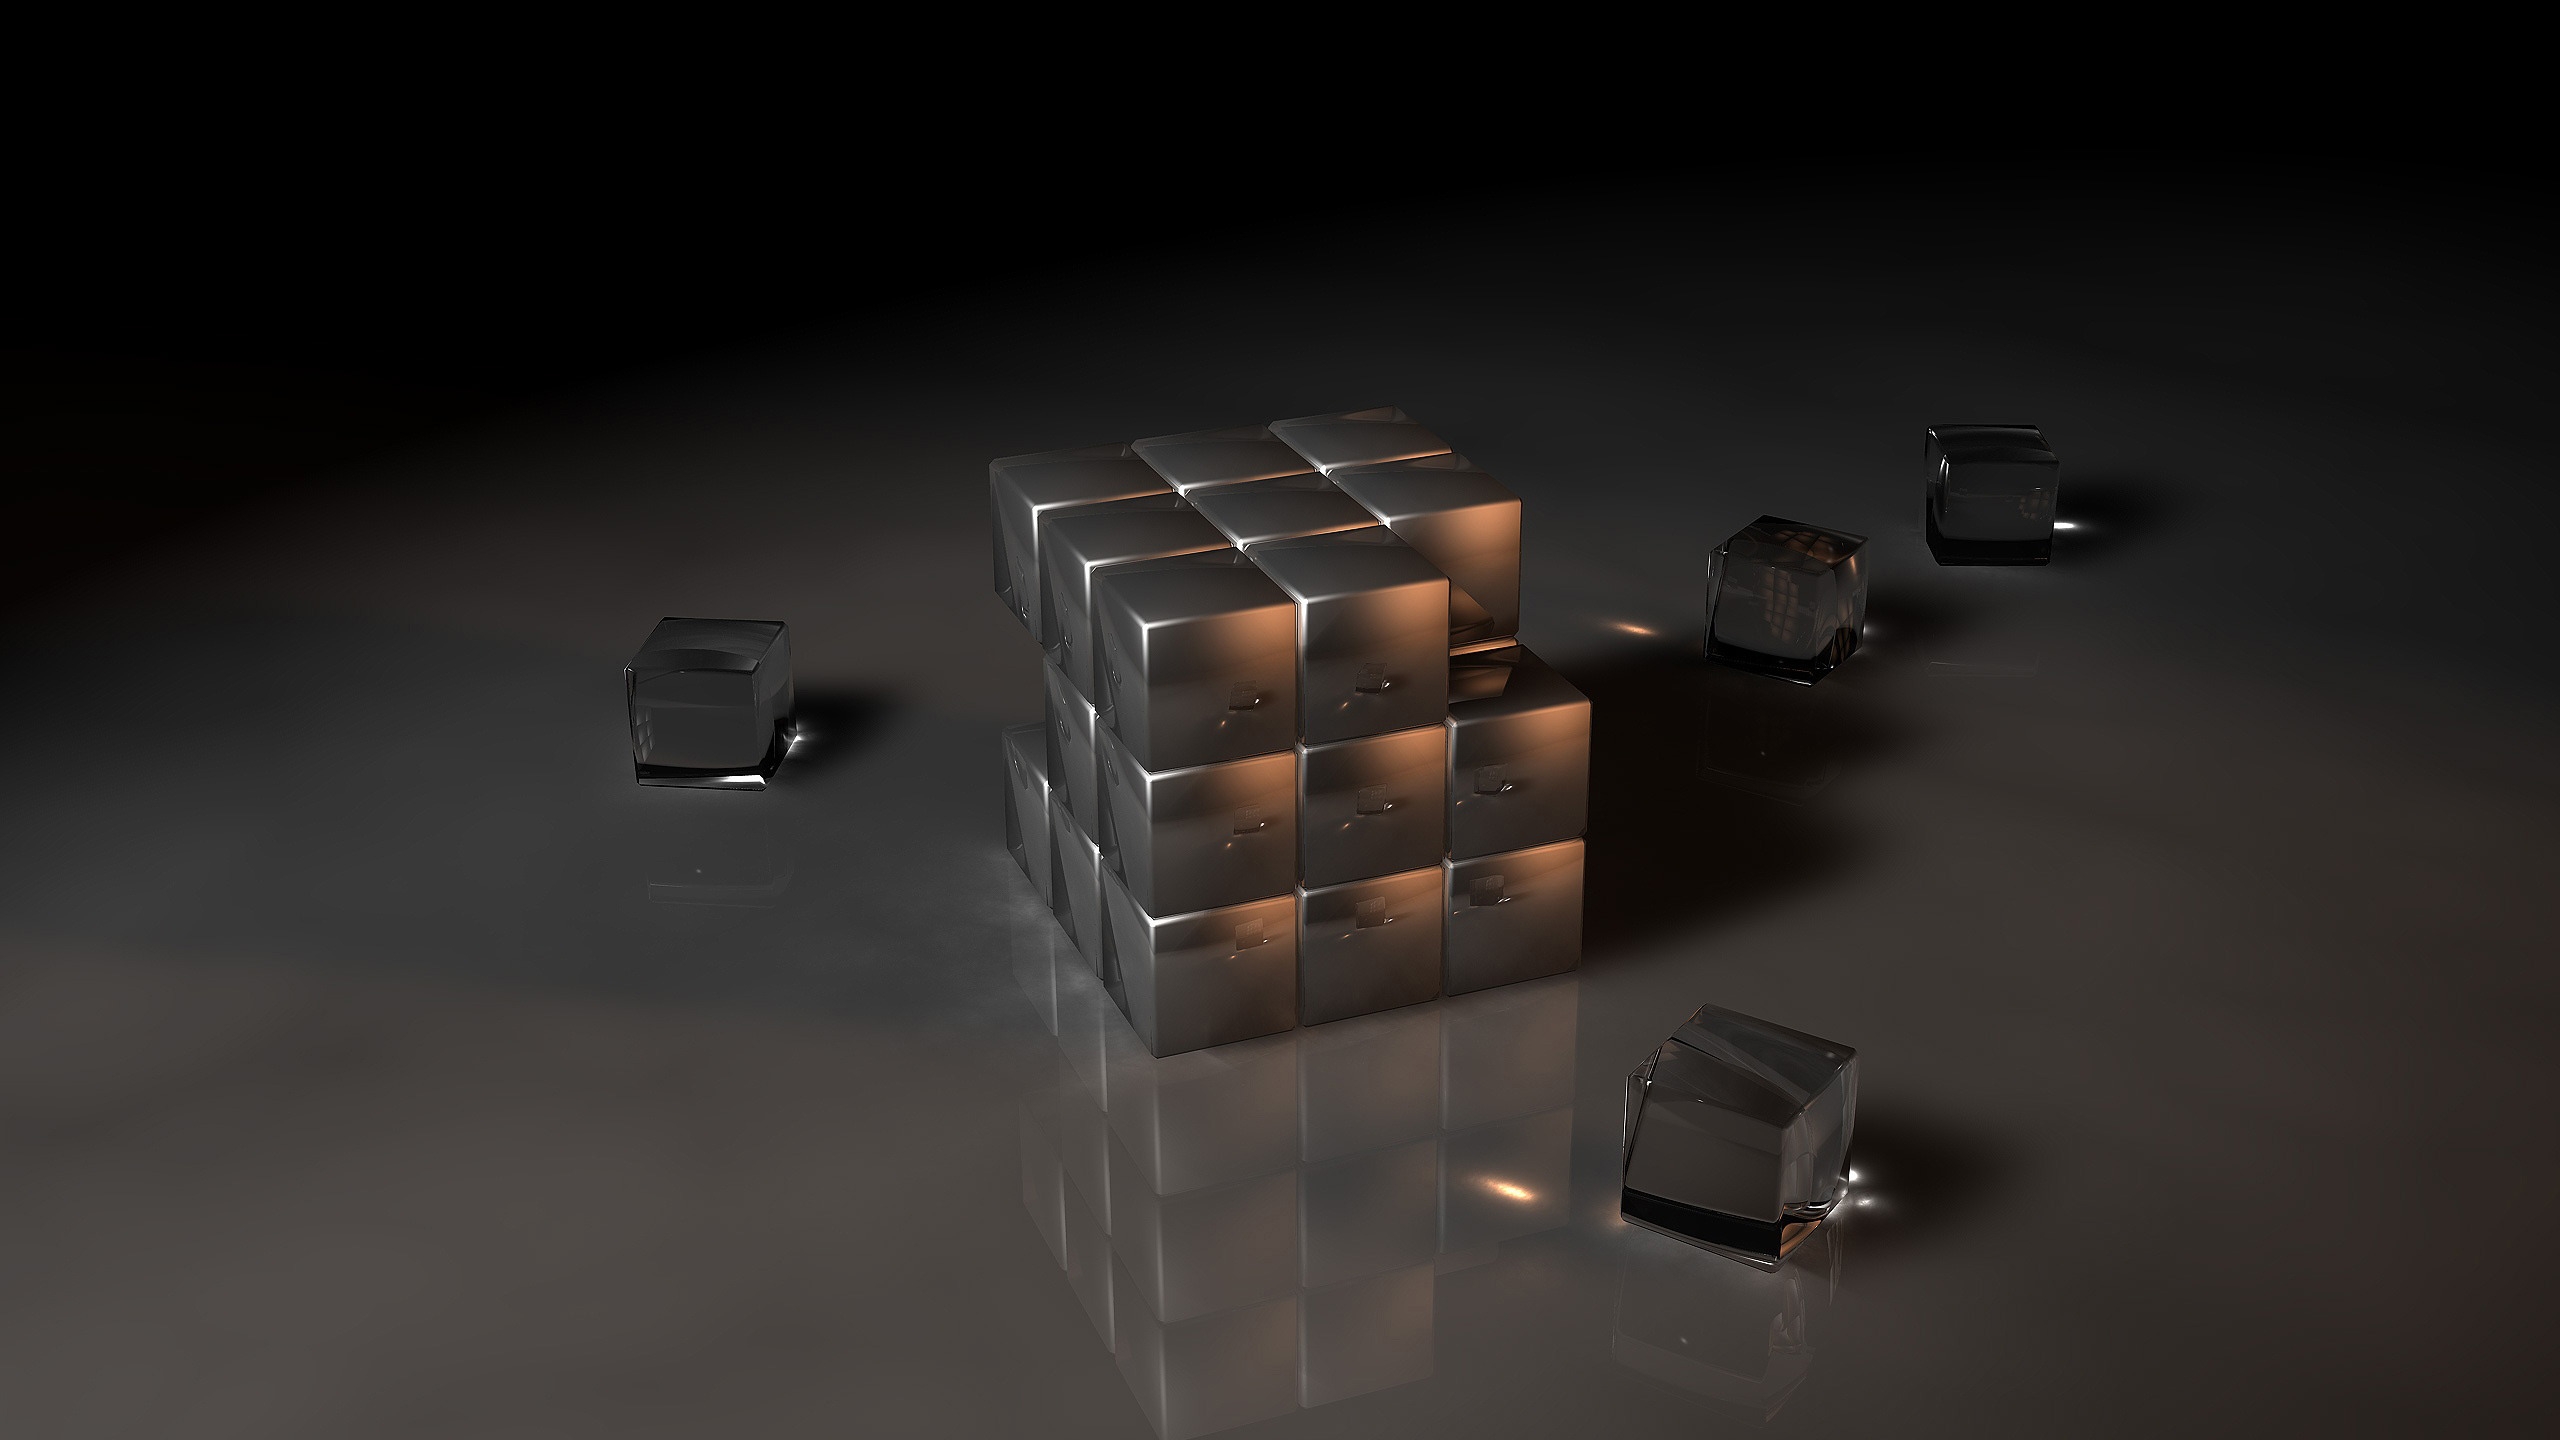 Black Rubiks Cube for 2560x1440 HDTV resolution